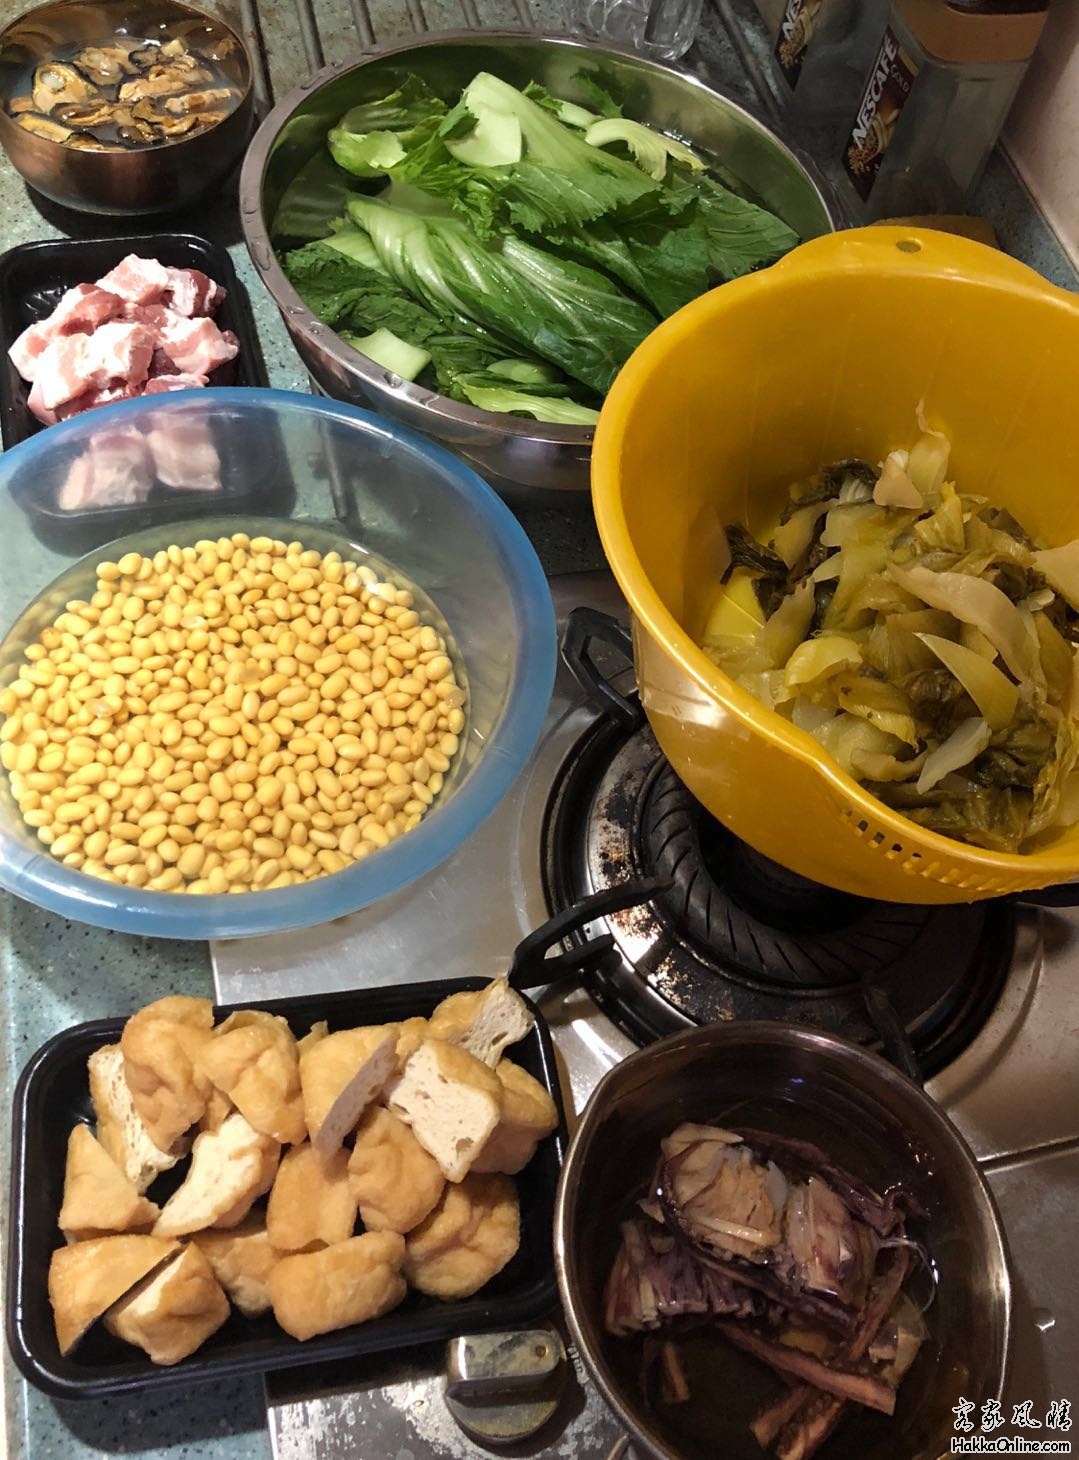 大乾蠔潮州咸菜尤魚絲五花肉加黃豆與油豆腐薄。配芥菜。